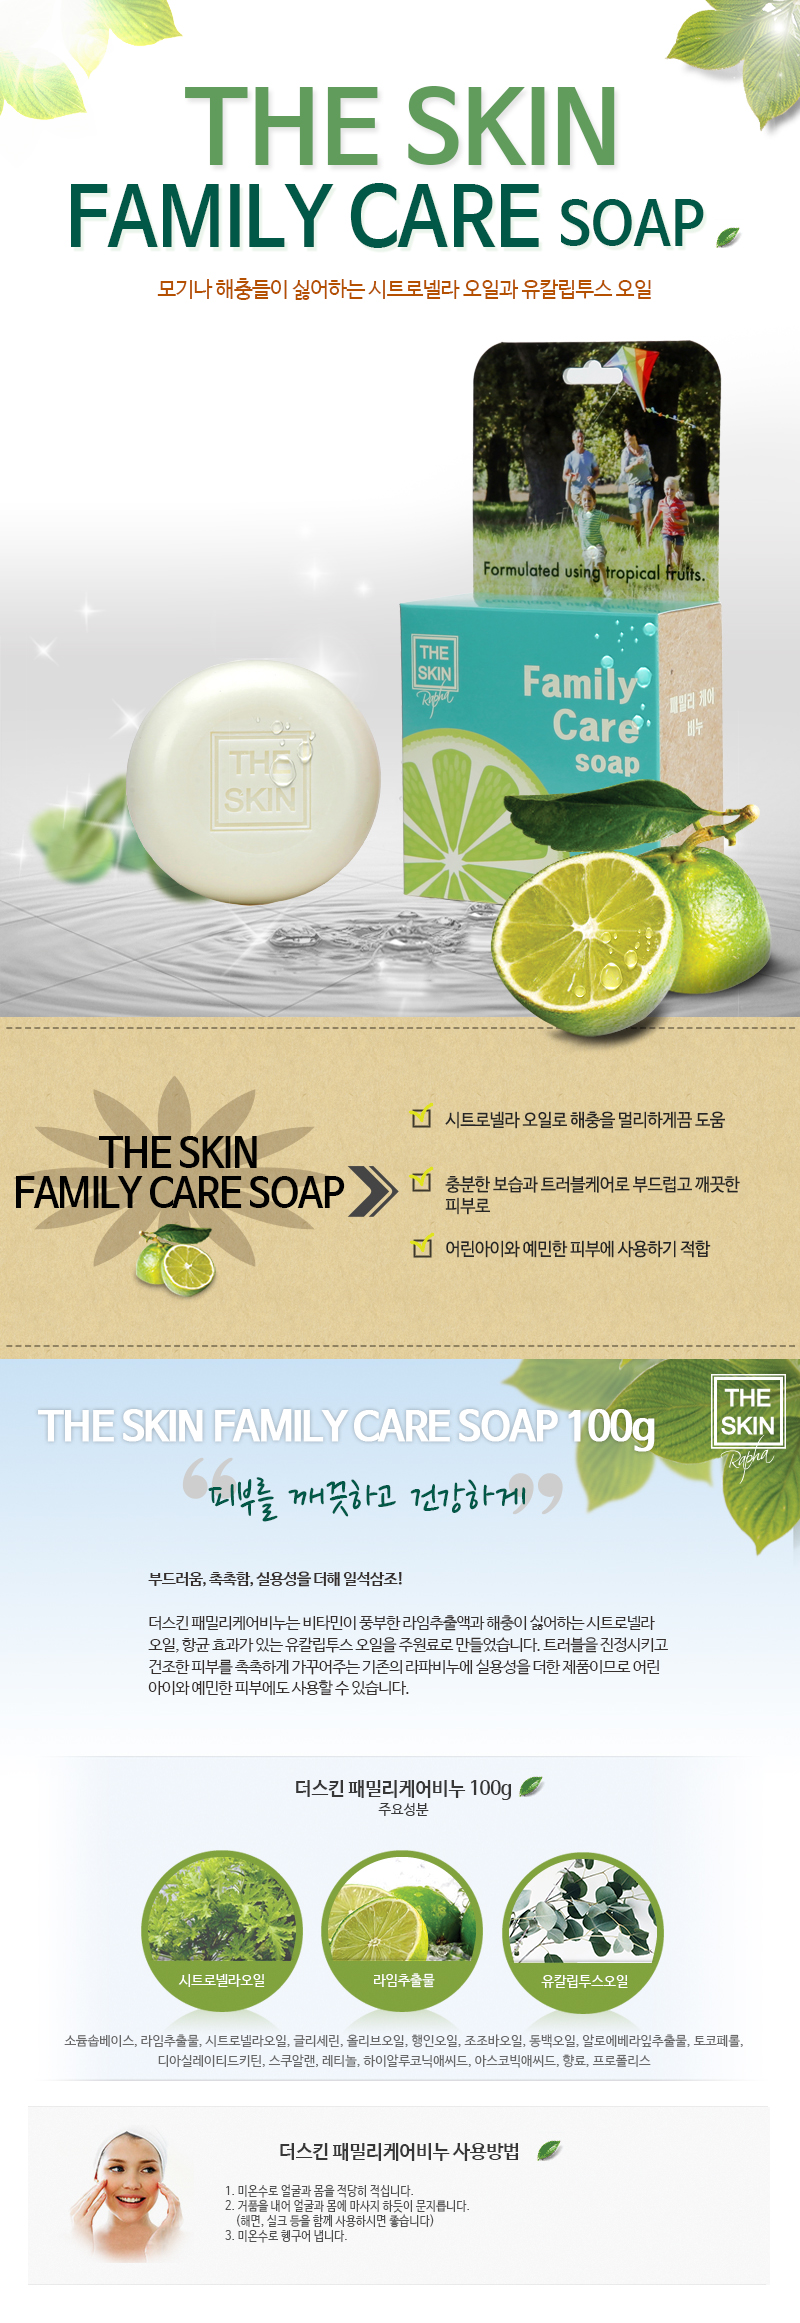 family_care_soap.jpg